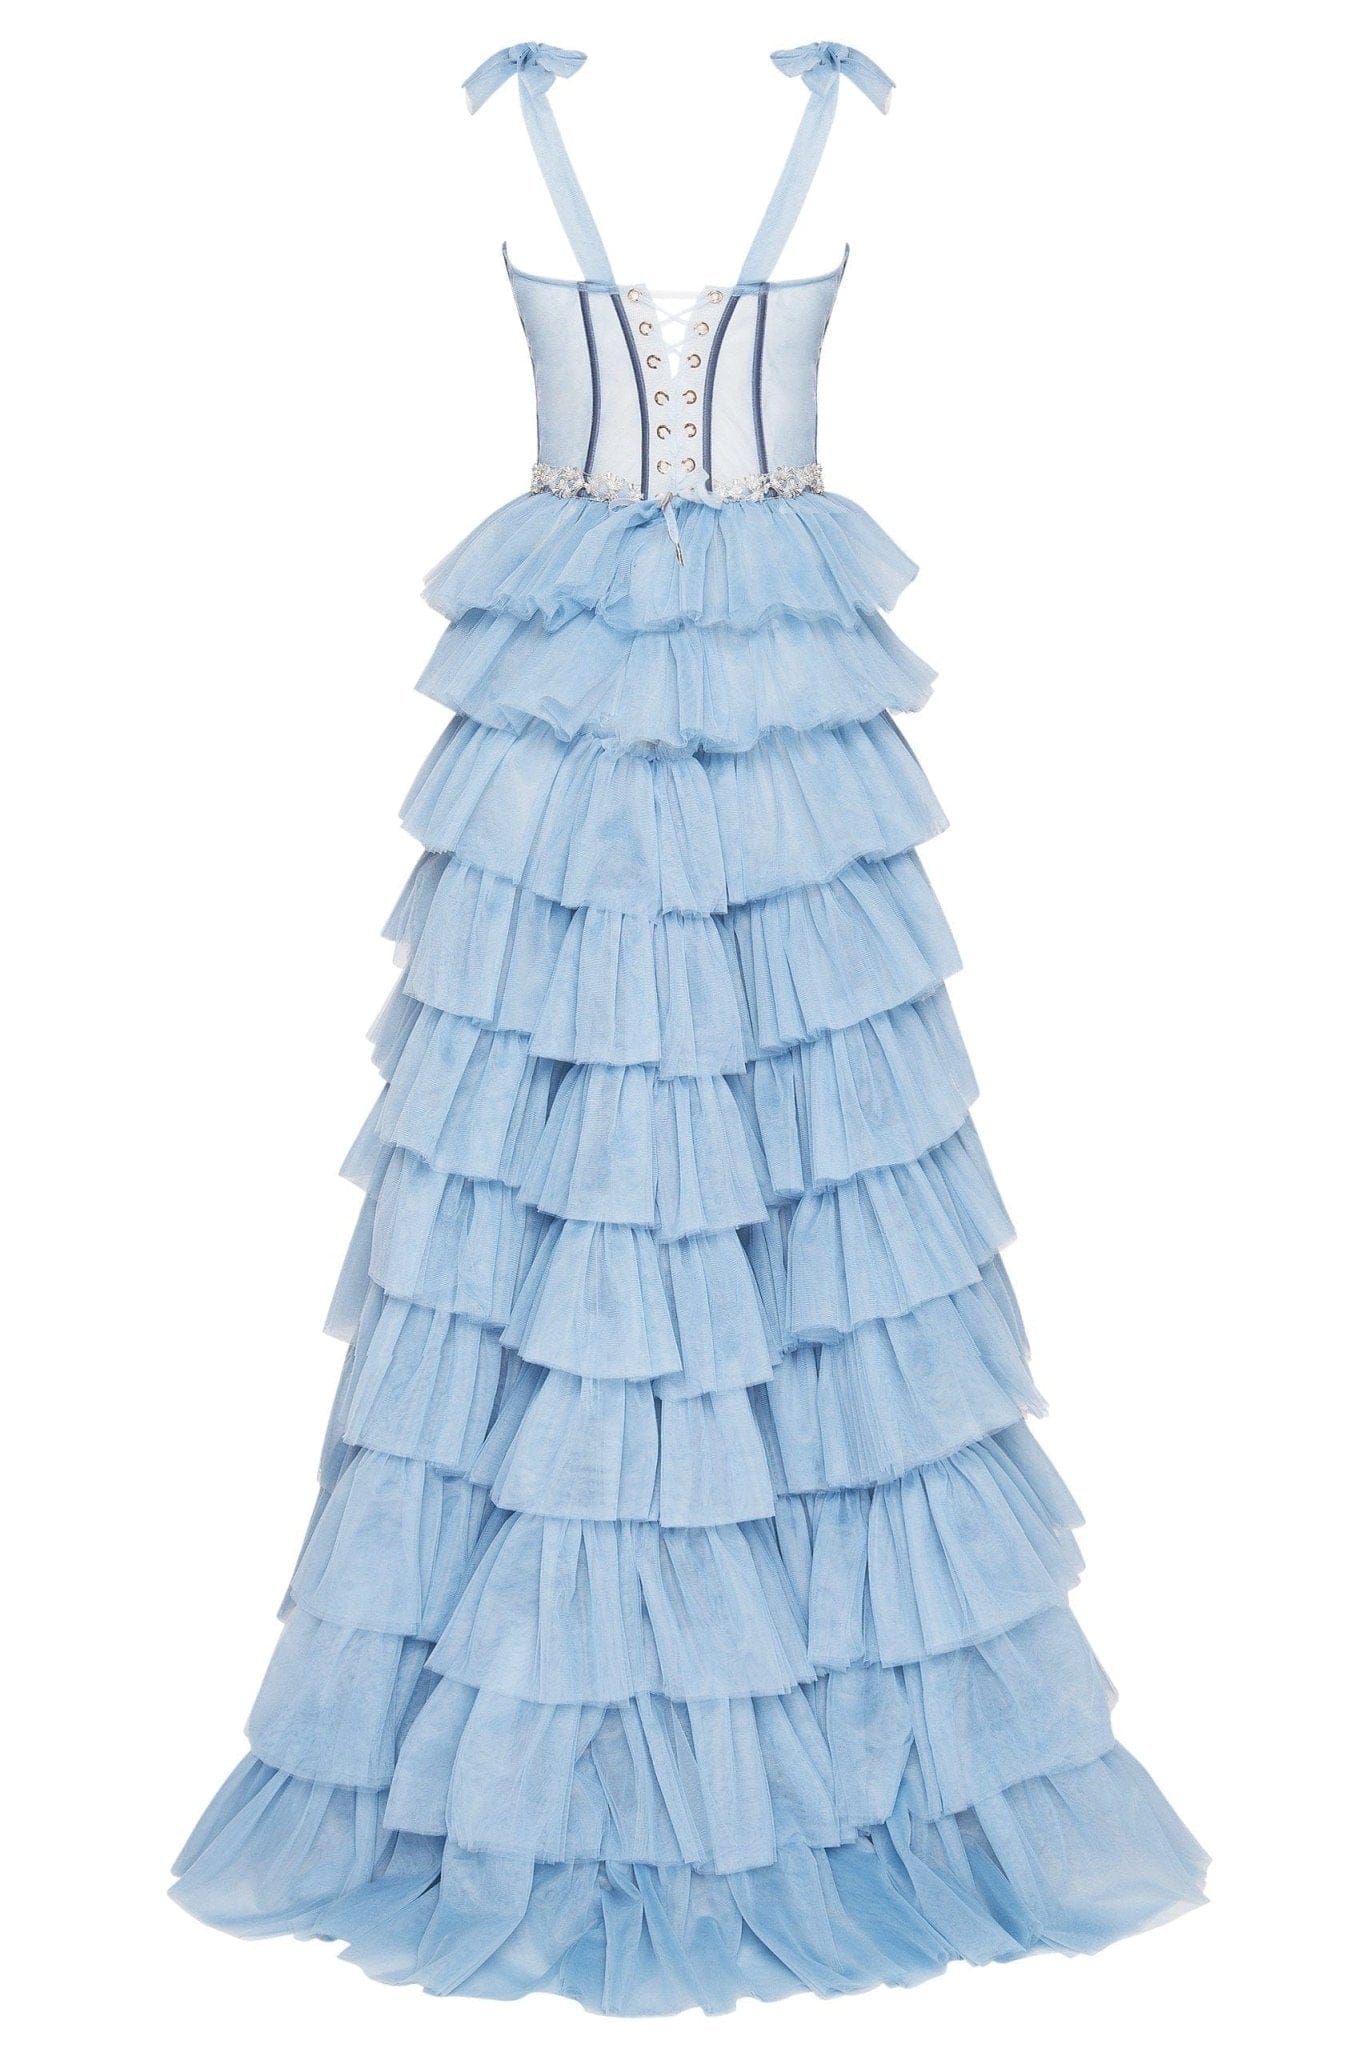 14+ Light Blue Tulle Dress